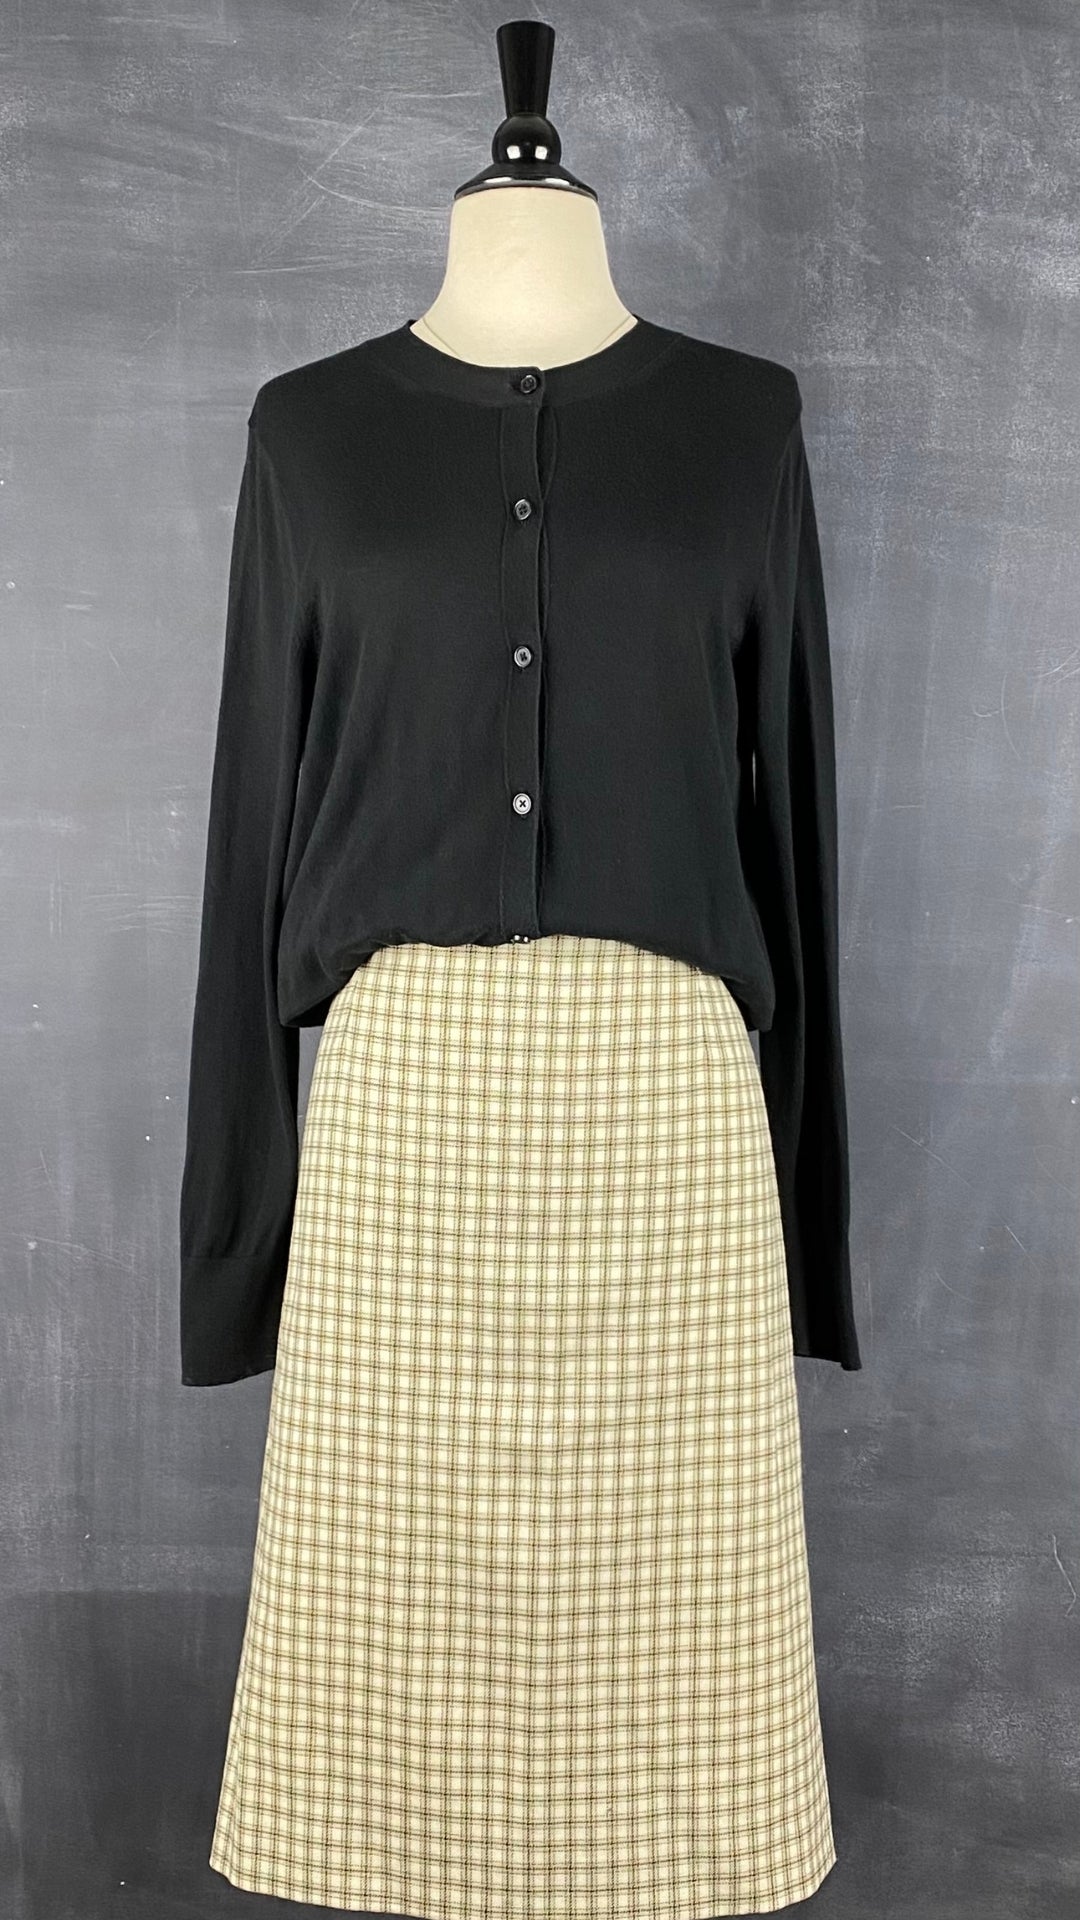 Cardigan boutonné noir en tricot mince à col rond Banana Republic, taille large. Vue de l'agencement avec la jupe Lucia en lainage.